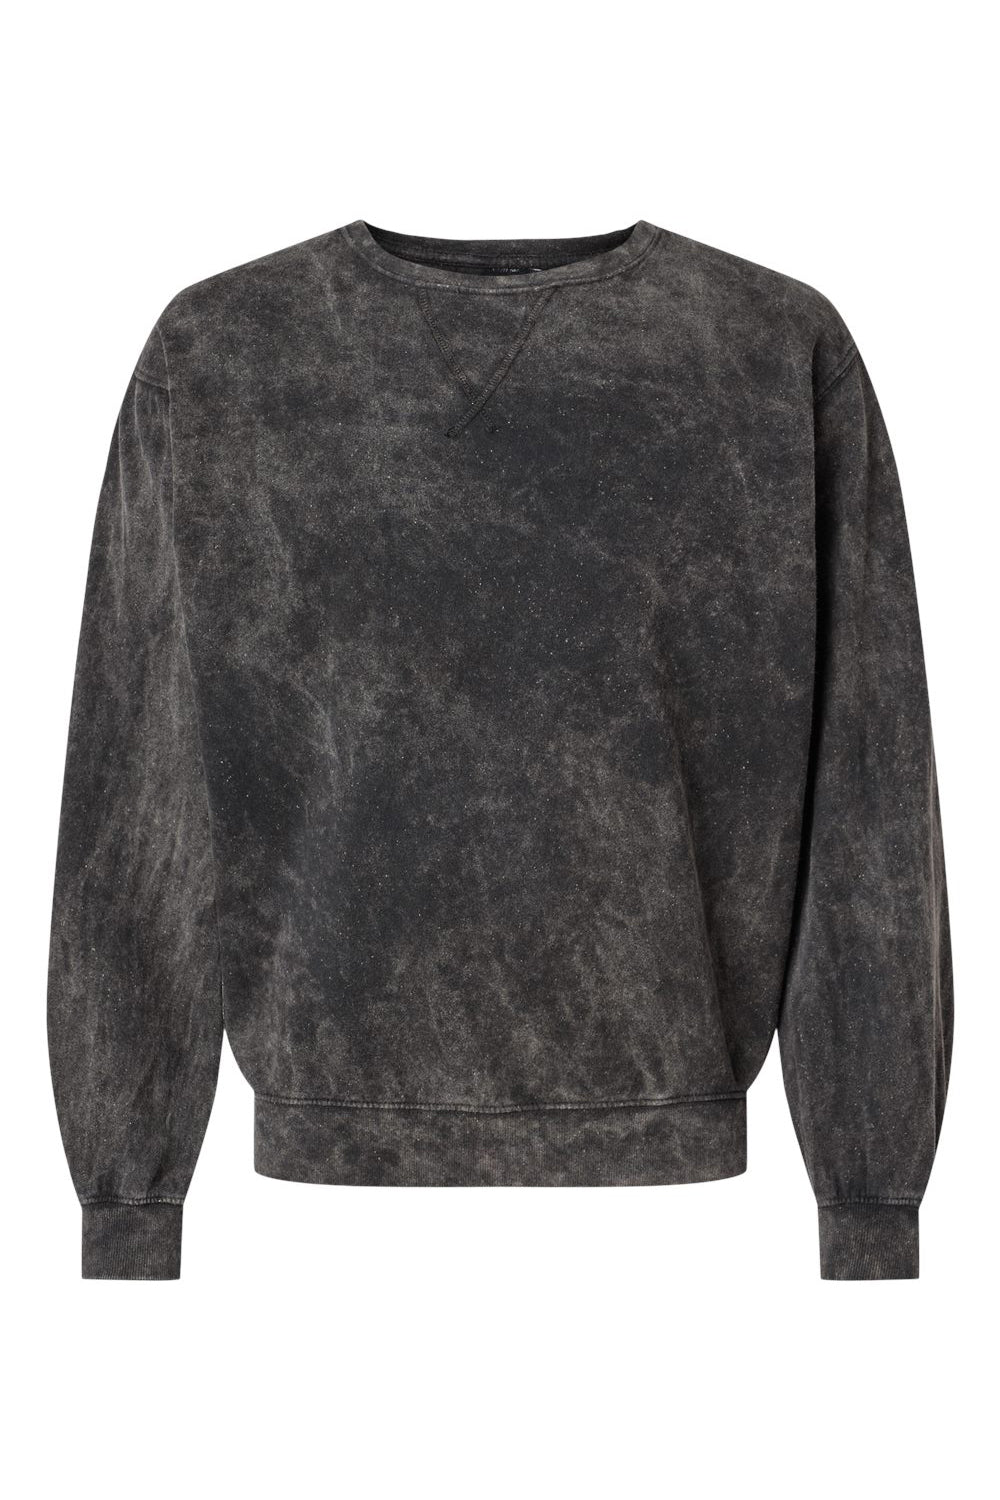 Dyenomite 845MW Mens Premium Fleece Mineral Wash Crewneck Sweatshirt Black Mineral Wash Flat Front